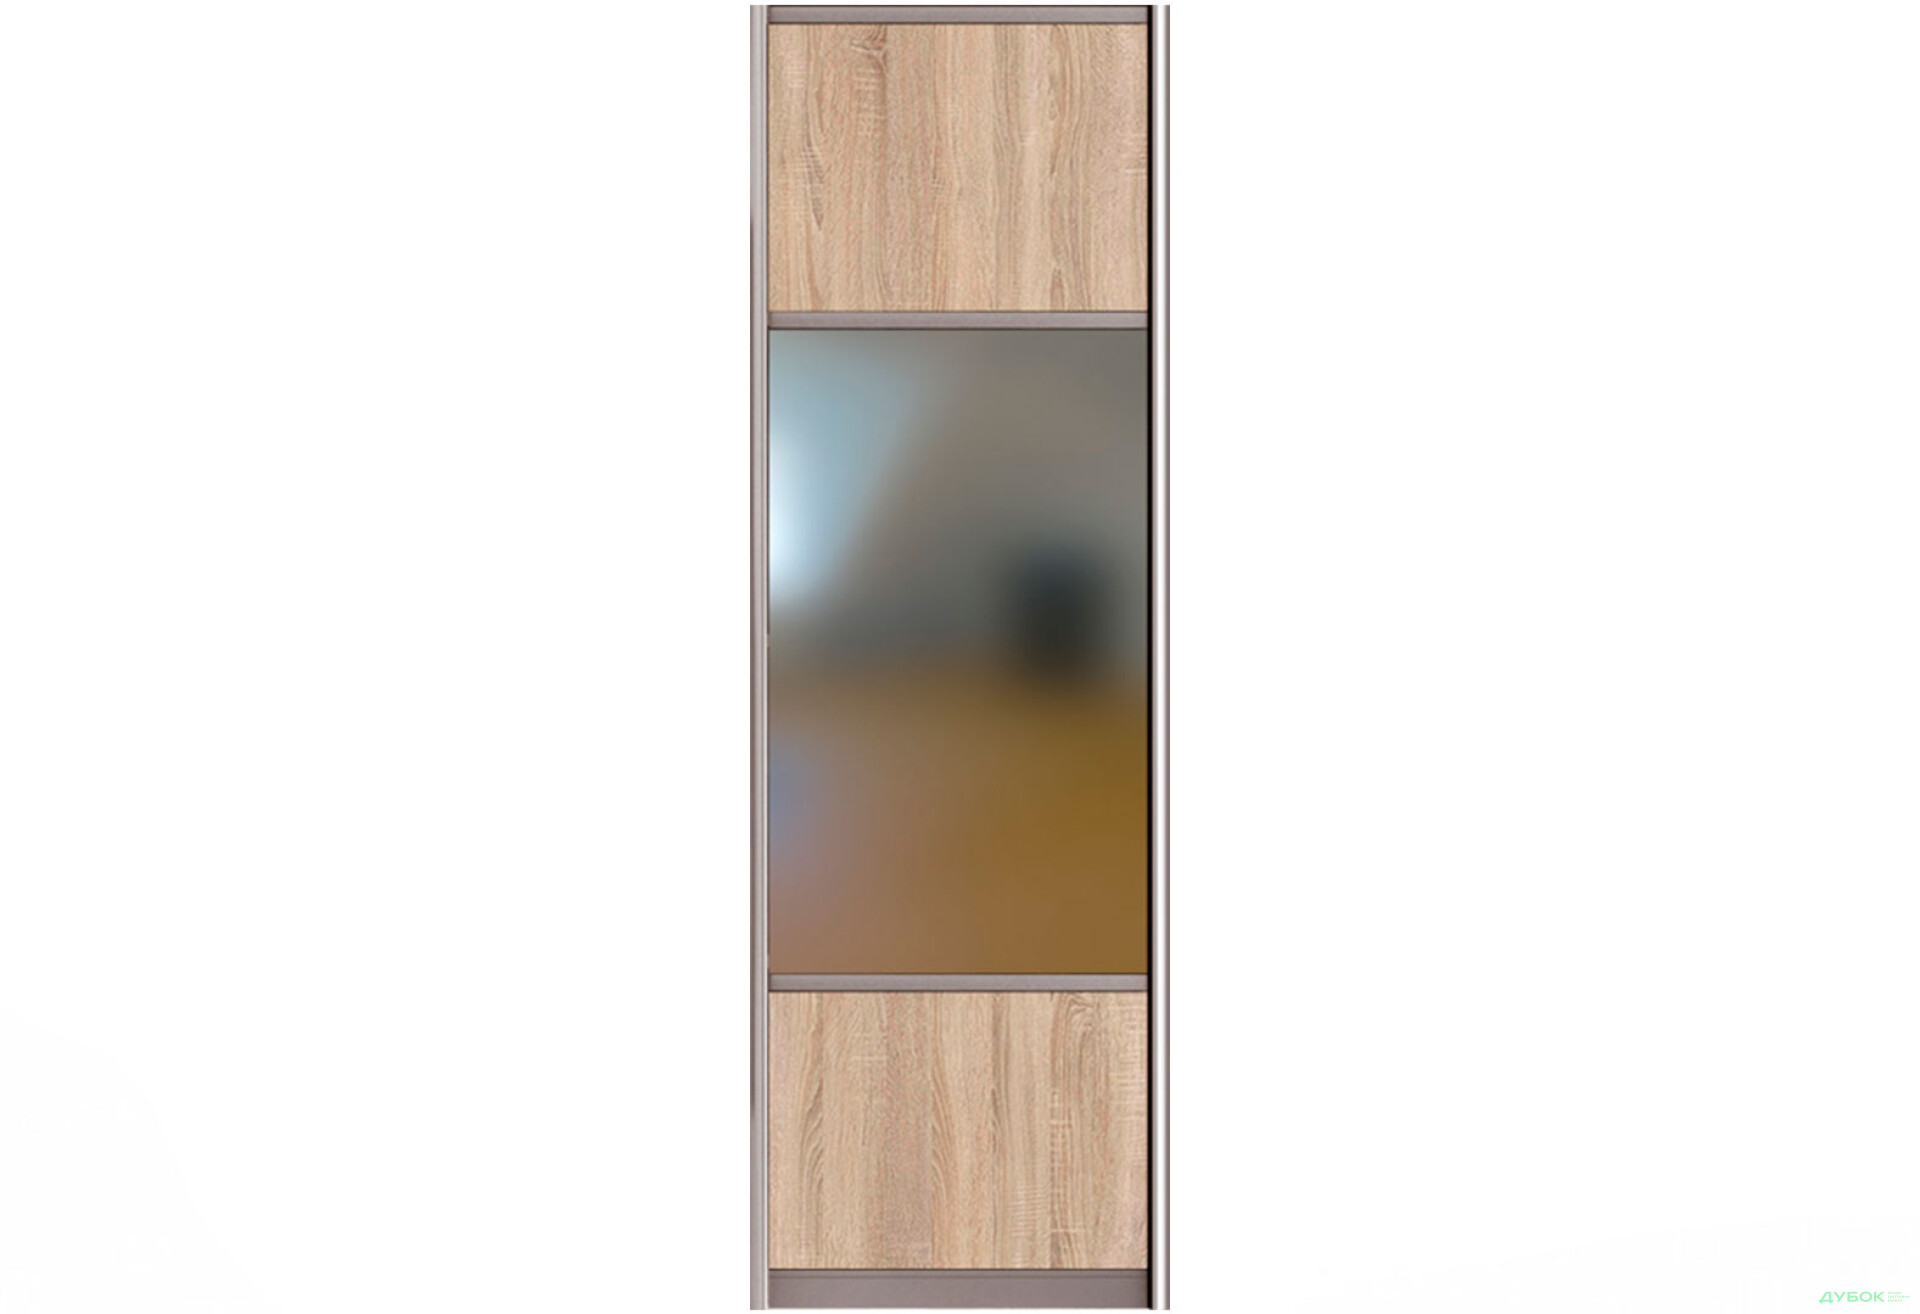 Фото 1 - Фасад Комби №3 ДСП + Зеркало шкафа-купе под размер Мебель Стар Мебель Стар